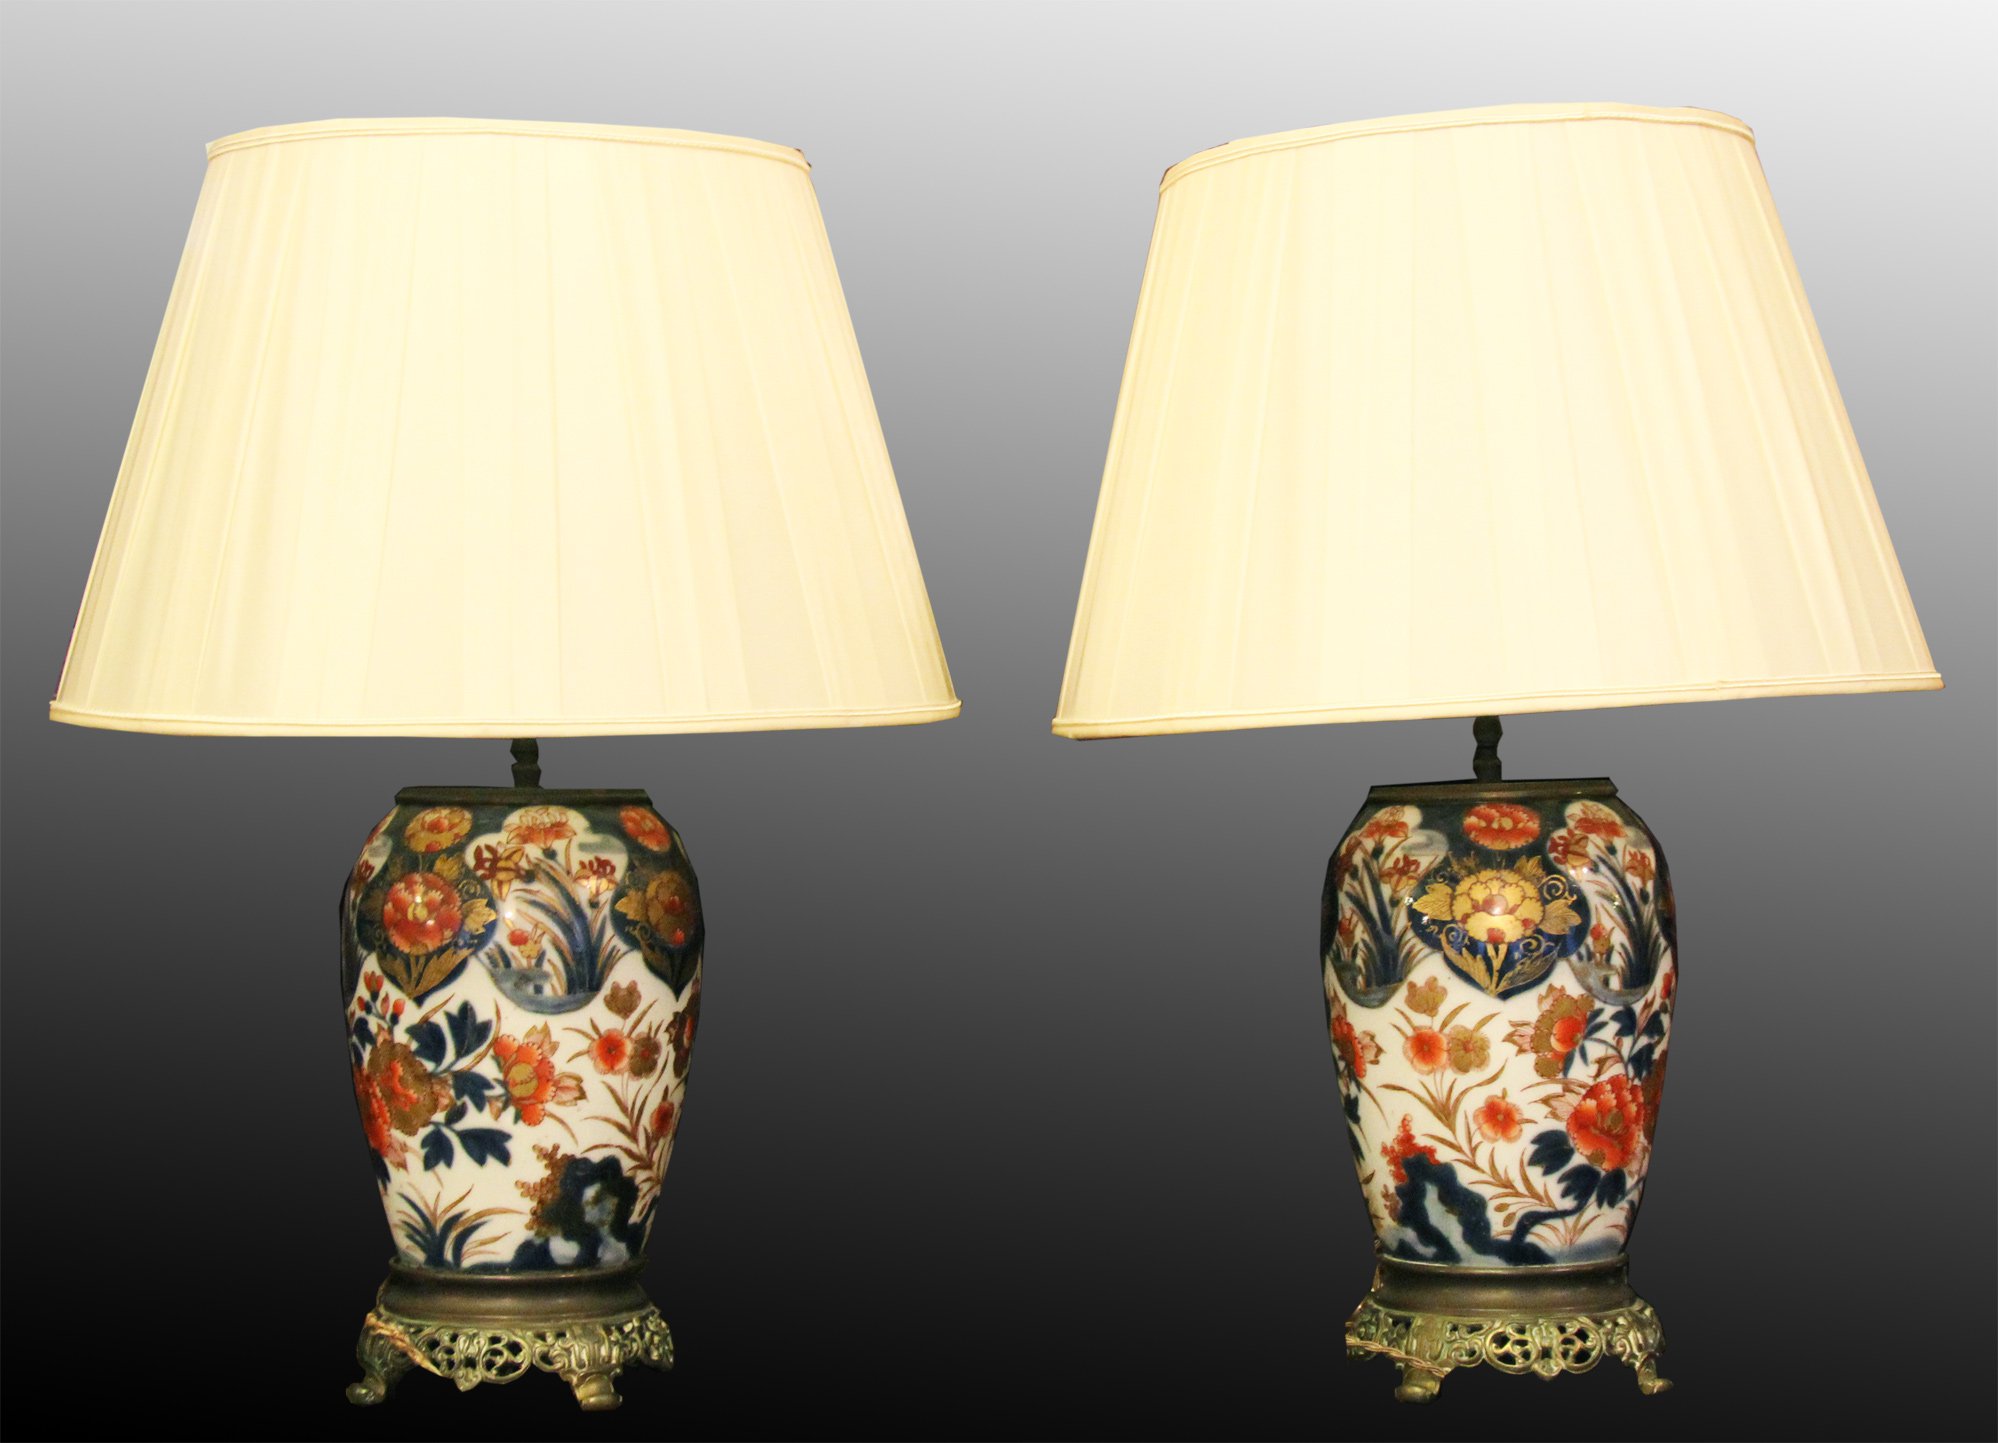 Сдвоенные лампы - отличный подарок. Фото с сайта sitorusantico.ru